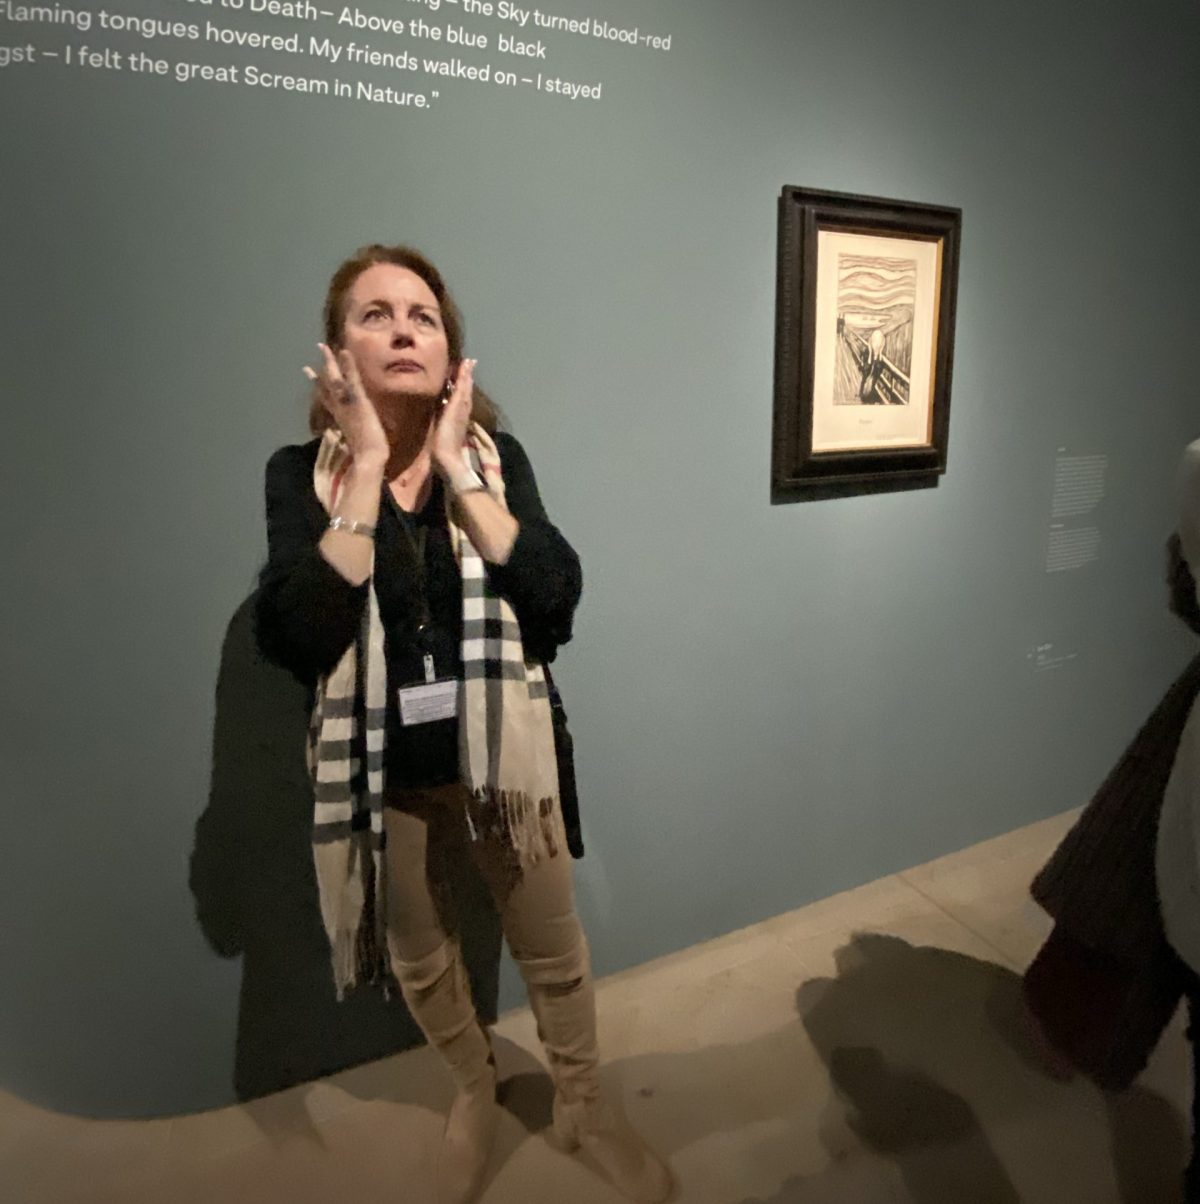 Laure Bailleul en train d'expliquer le tableau "Le cri" d'Edvard Munch". On la voit approcher ses mains sur son visage pour exprimer un cri d'effroi